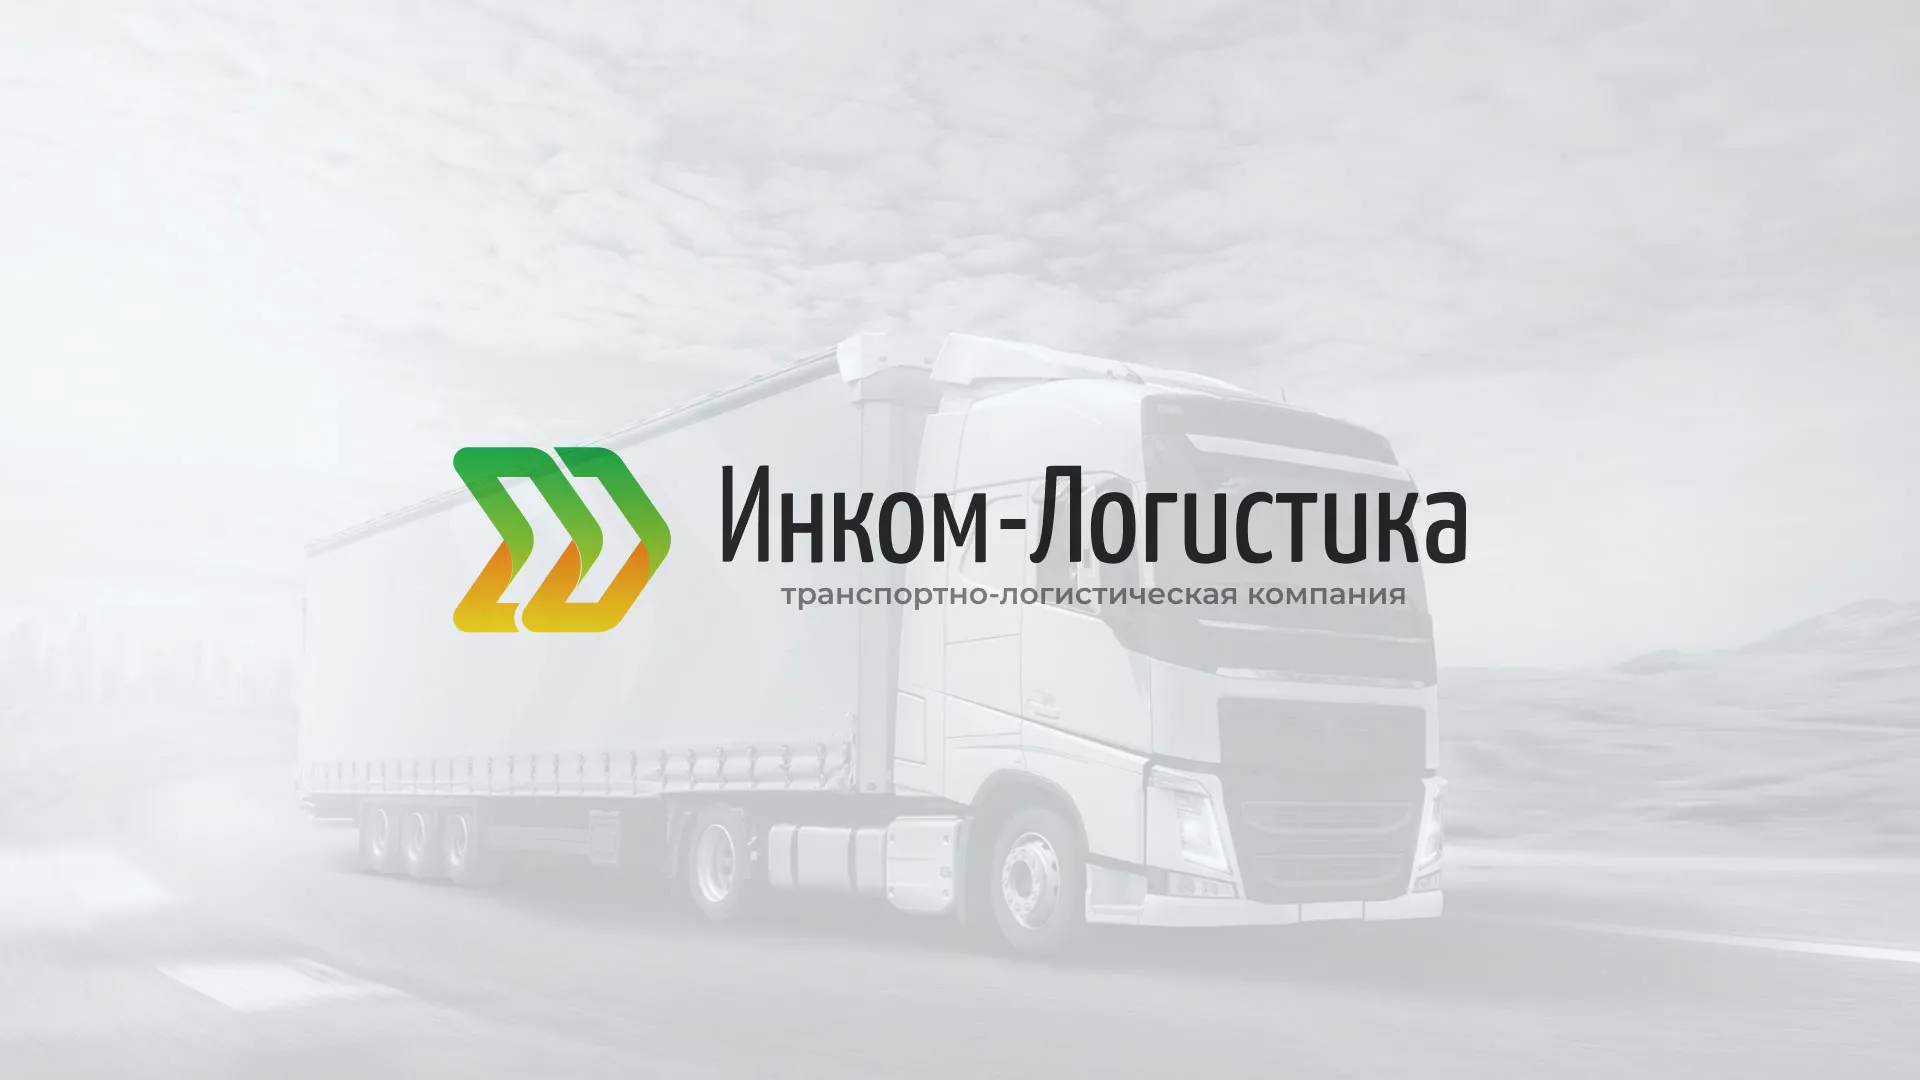 Разработка логотипа и сайта компании «Инком-Логистика» в Гурьевске